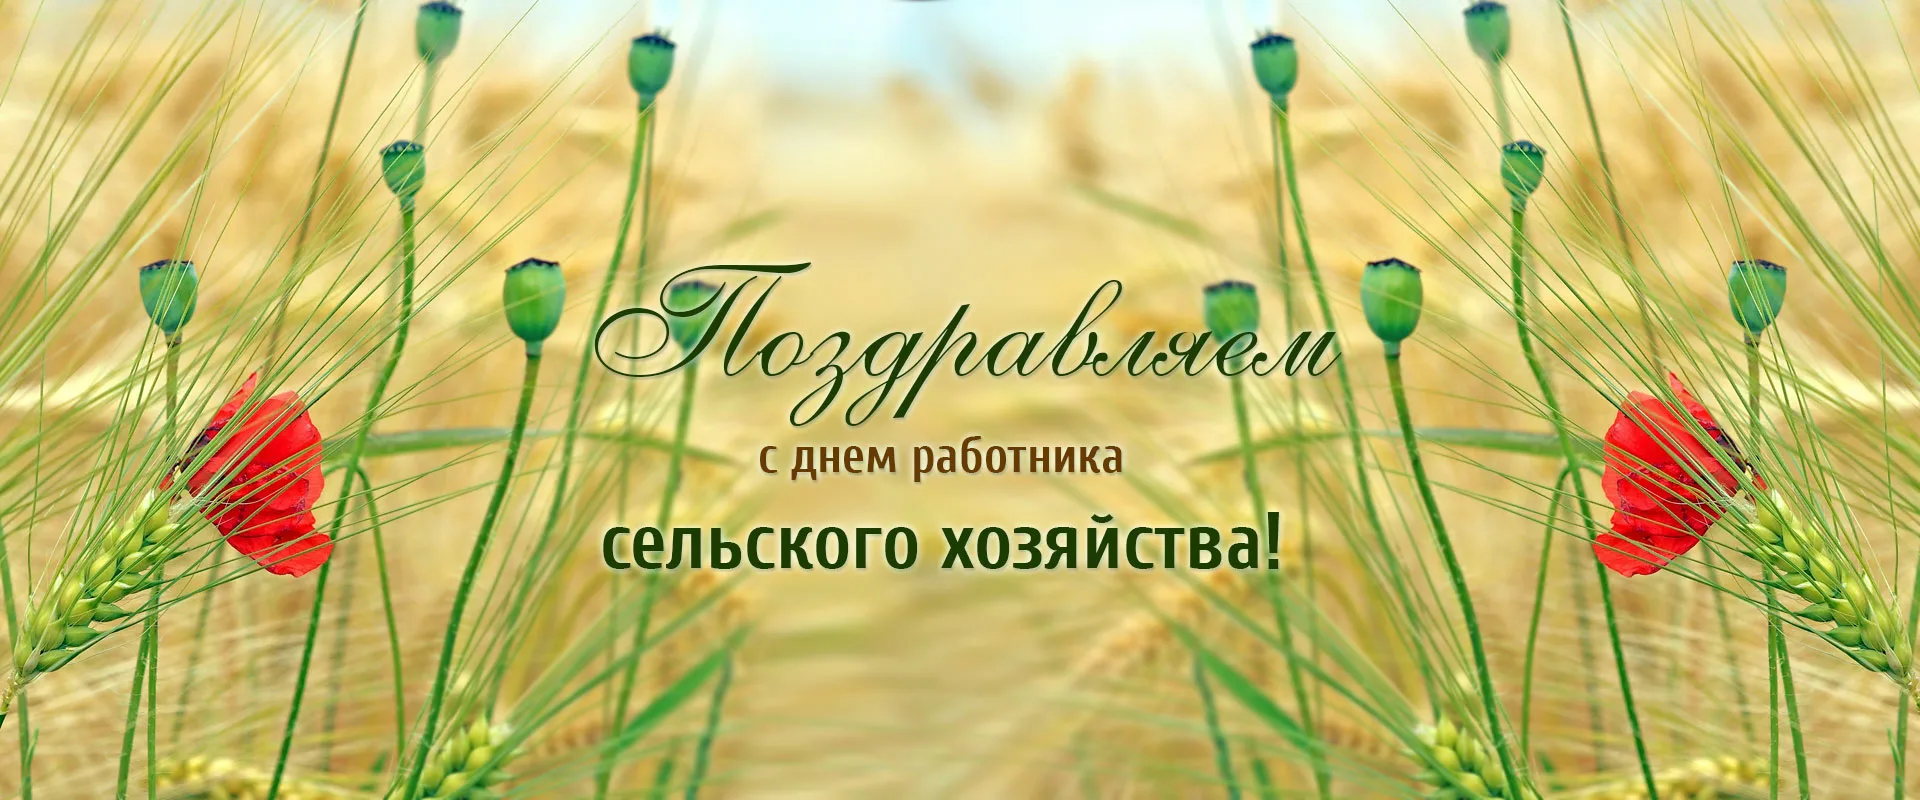 Фото Поздравления с днем работников сельского хозяйства Украины #91